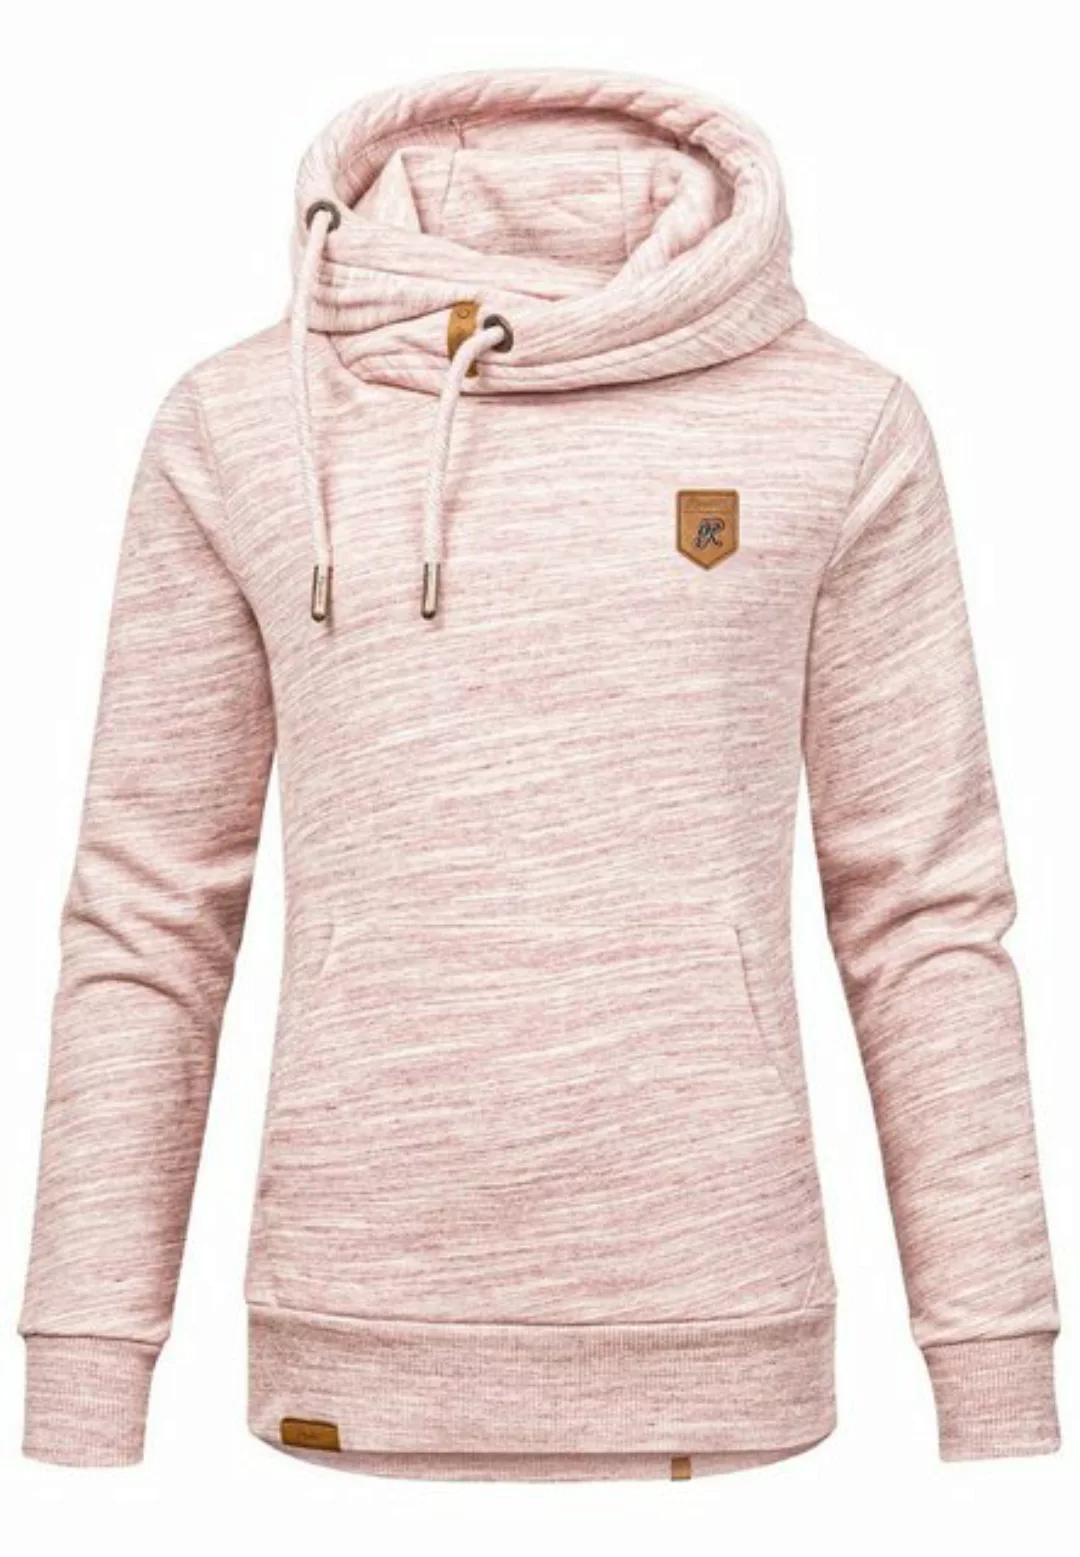 REPUBLIX Sweatshirt Damen Kapuzenpullover Sweatjacke Pullover Hoodie günstig online kaufen